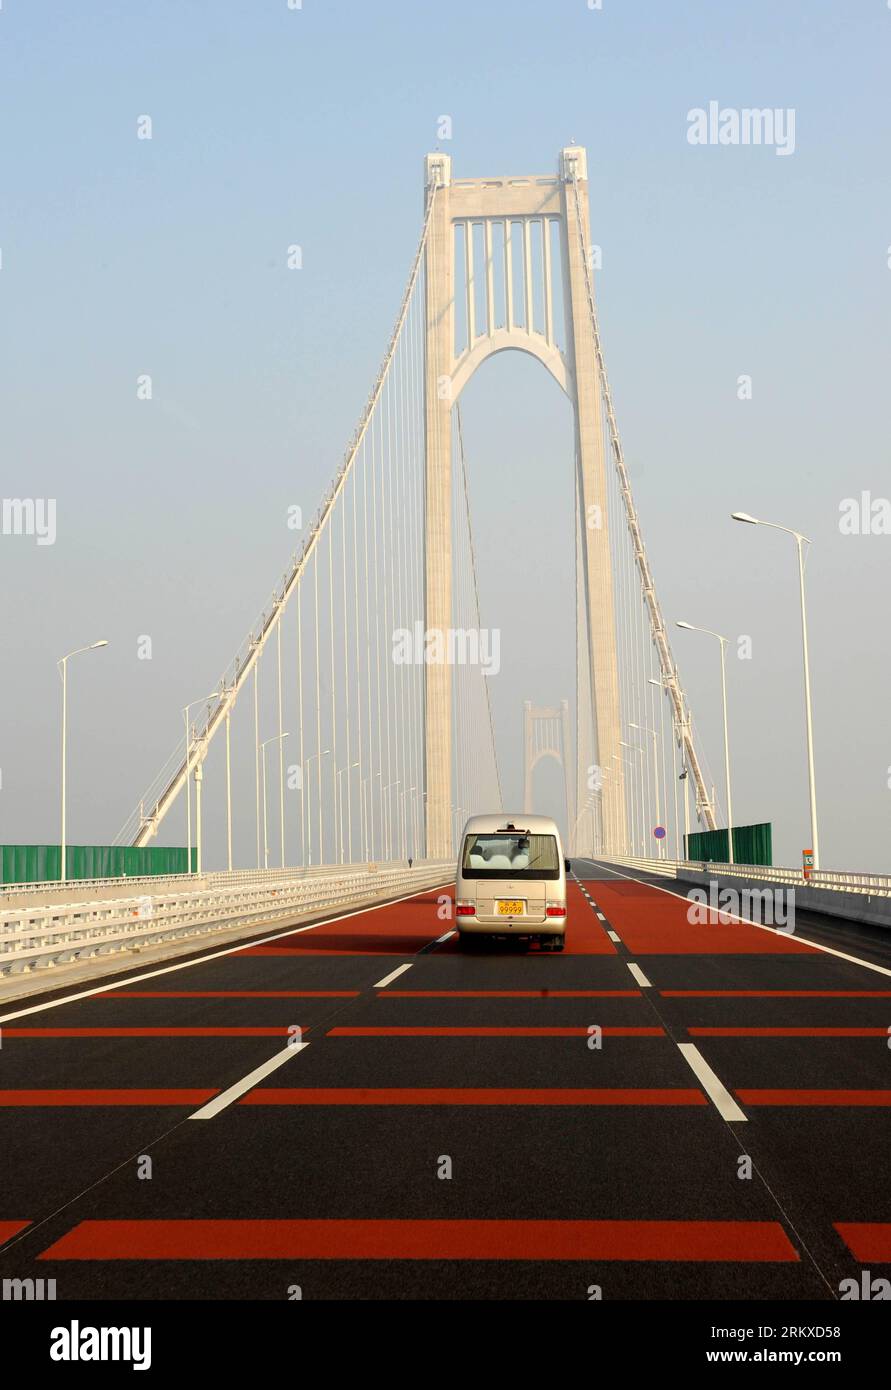 Bildnummer: 58948591 Datum: 24.12.2012 Derechos de autor: Imago/Xinhua Un vehículo corre en el puente del río No.4 Nanjing Yangtze en Nanjing, capital de la provincia de Jiangsu del este de China, 24 de diciembre de 2012. El puente se abrió al tráfico el lunes. El puente colgante de 28,966 kilómetros de largo, apoyado por dos torres y tres vanos, tiene un vano principal de 1.418 metros de largo, el más largo entre los puentes del mismo tipo en China y el tercero más largo del mundo. (Xinhua/Sun Can) (zz) CHINA-NANJING-NO.4 YANGTZE RIVER BRIDGE-OPEN (CN) PUBLICATIONxNOTxINxCHN Gesellschaft Verkehr Straßenverkehr Brücke Straße x0x xrj 2012 hoch Foto de stock